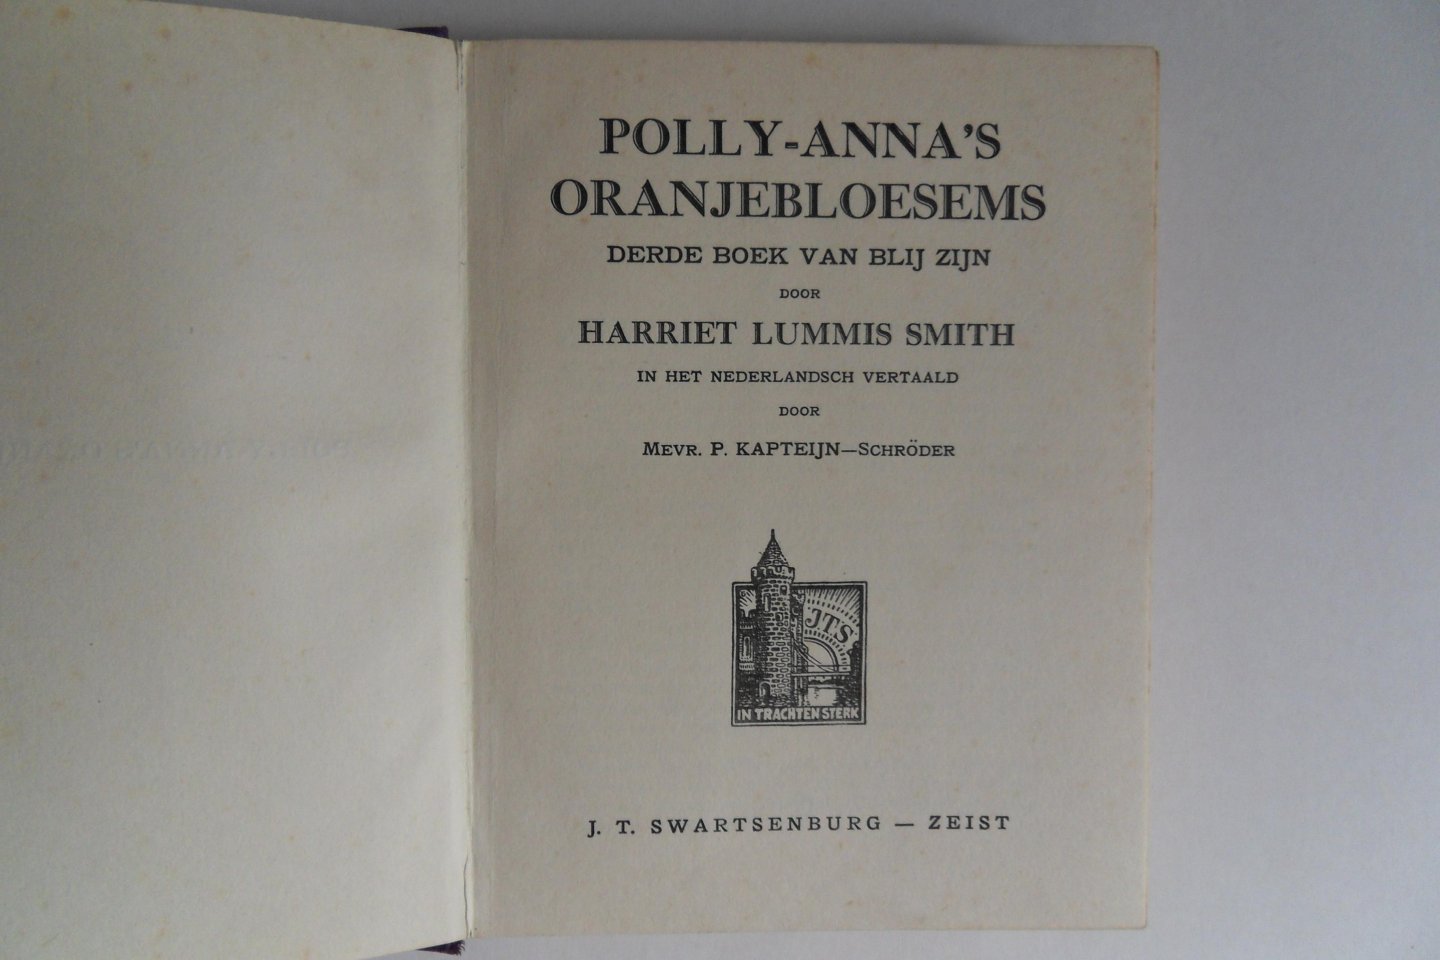 Smith, Harriet Lummis. [ Nederlandse vertaling door mevr. P. Kapteijn-Schröder ]. - Pollyanna`s Oranjebloesems. [ titelblad: Polly-Anna`s Oranjebloesems ]. - Derde boek van blij zijn.